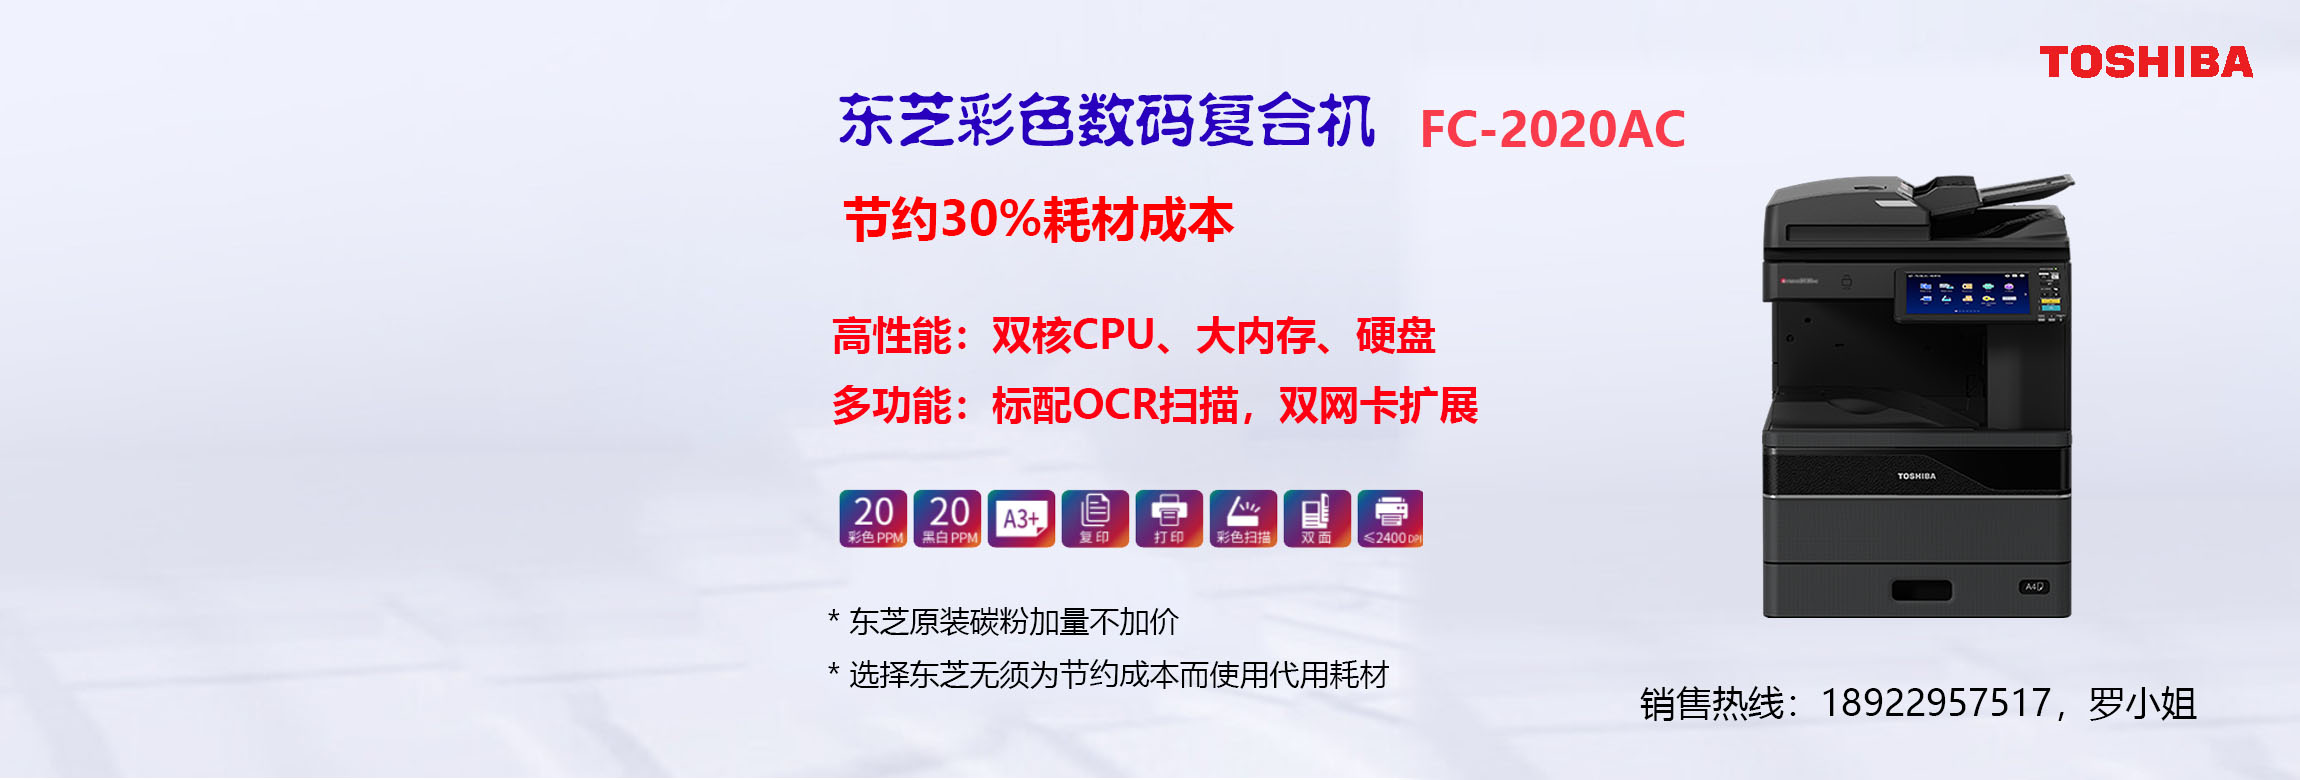 东芝FC-2020AC